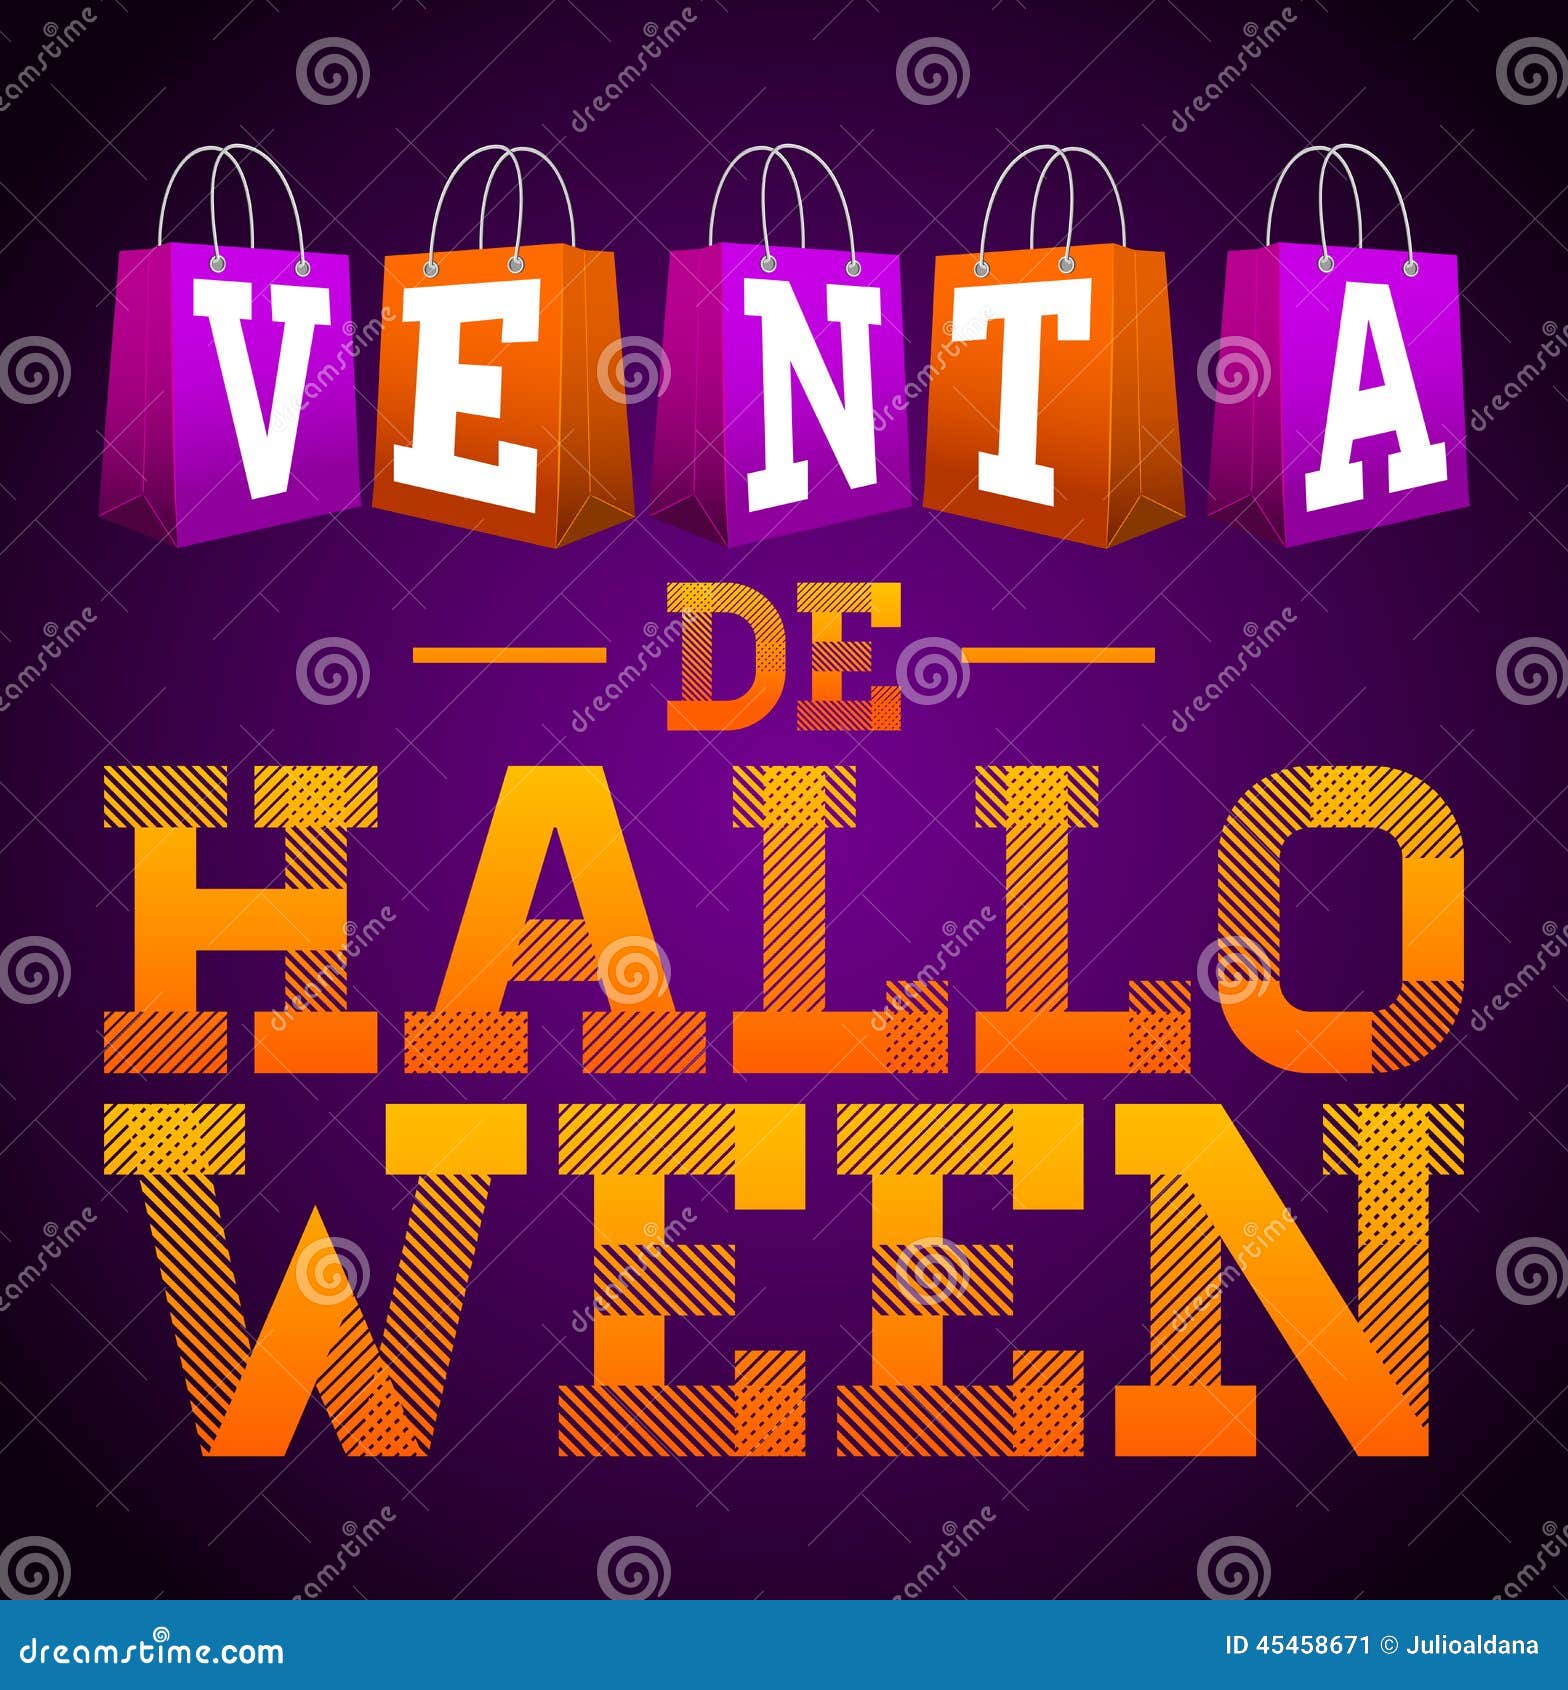 venta de halloween - halloween sale spanish text